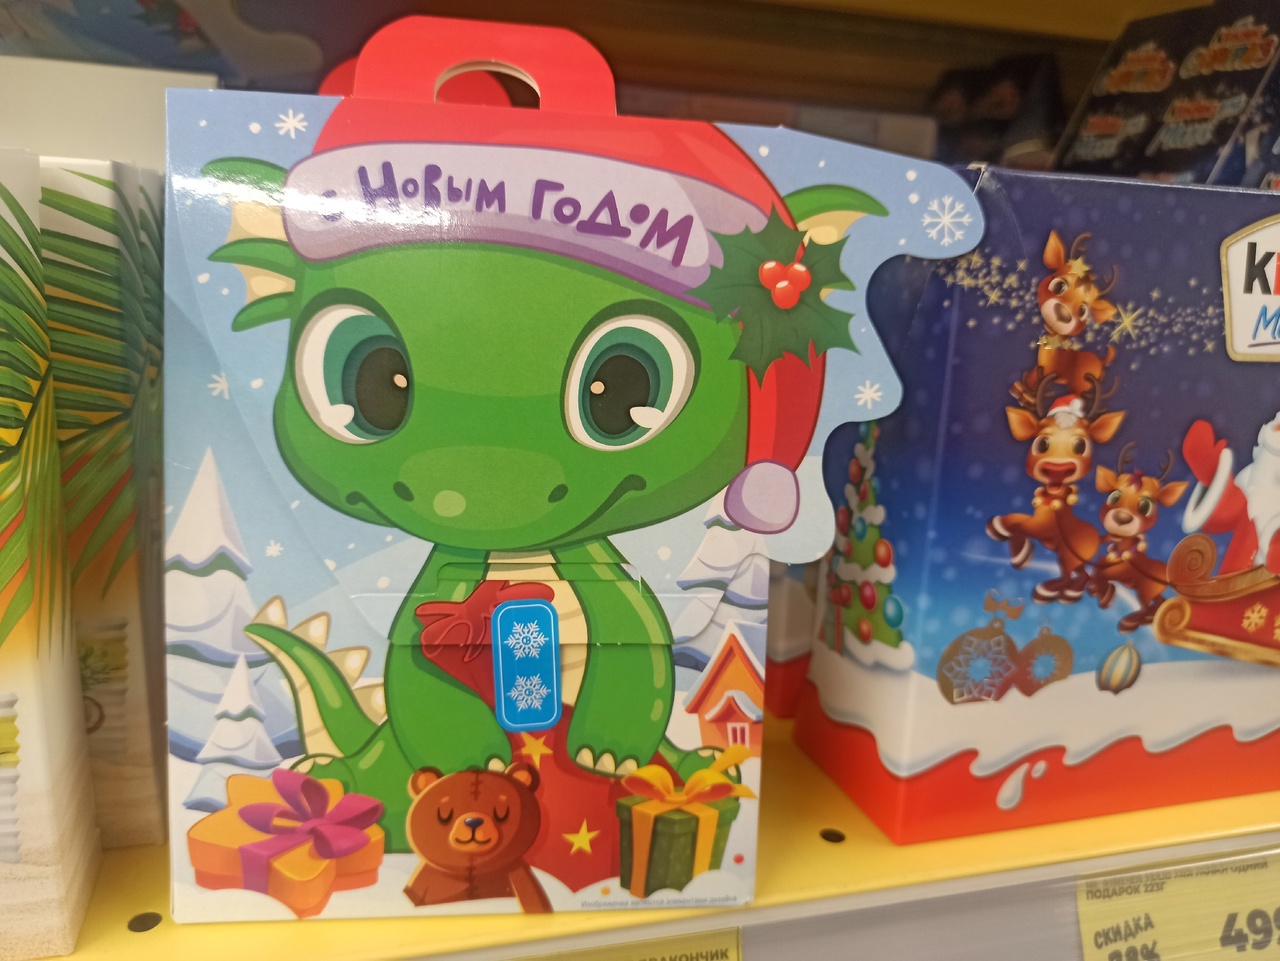 Костромские дети на Новый год могут получить одинаковые сладкие подарки